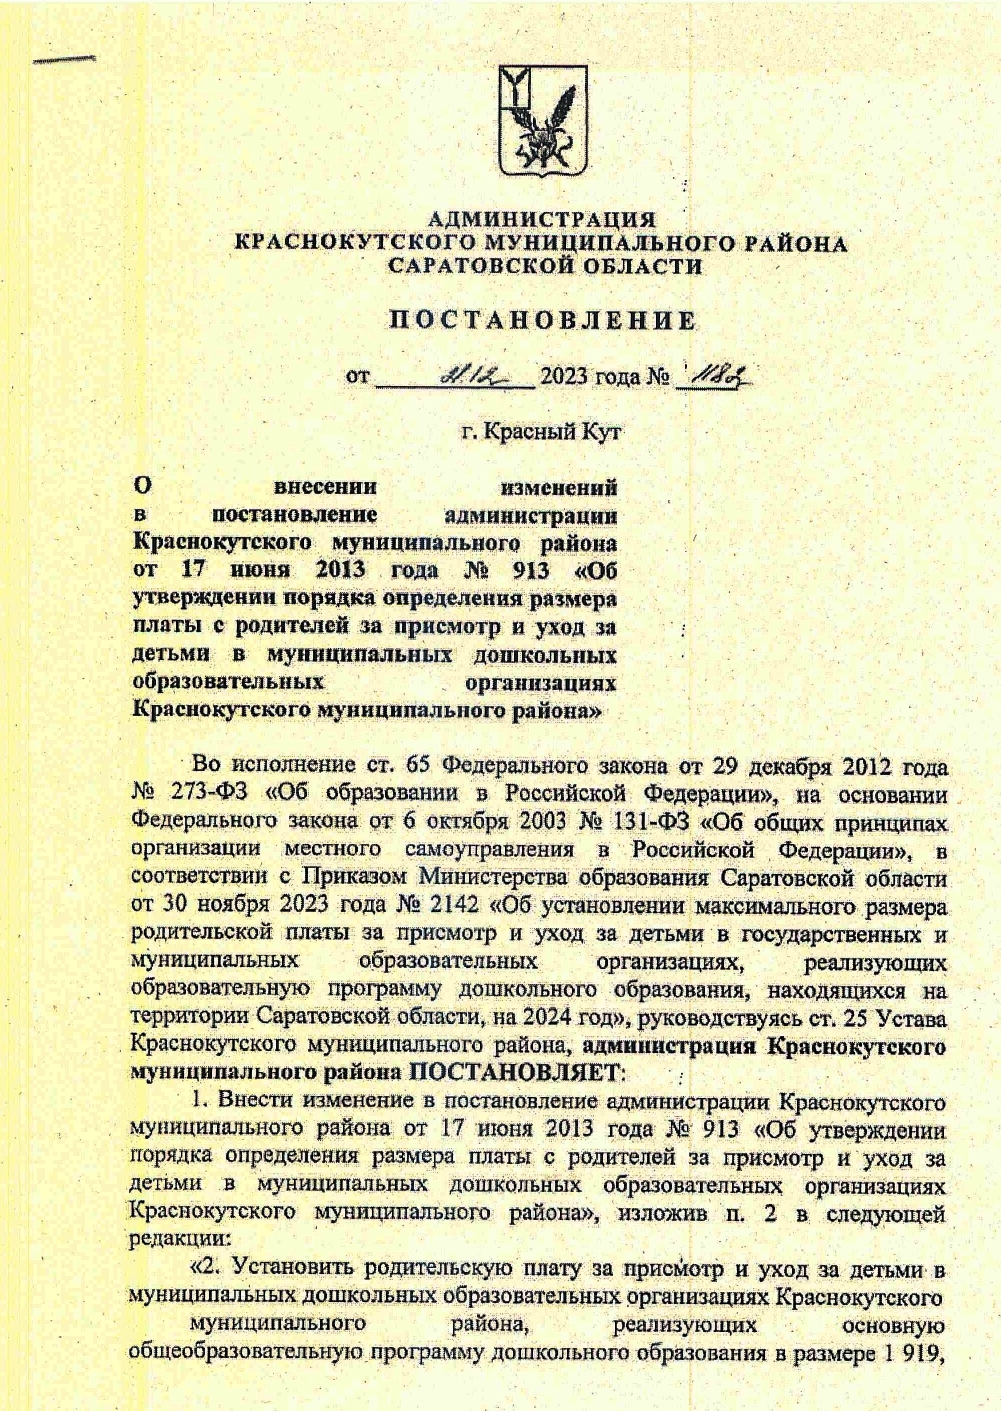 Постановление  О  внесении изменений в постановление администрации Краснокутского муниципального района от 17 июня 2013 года № 913.